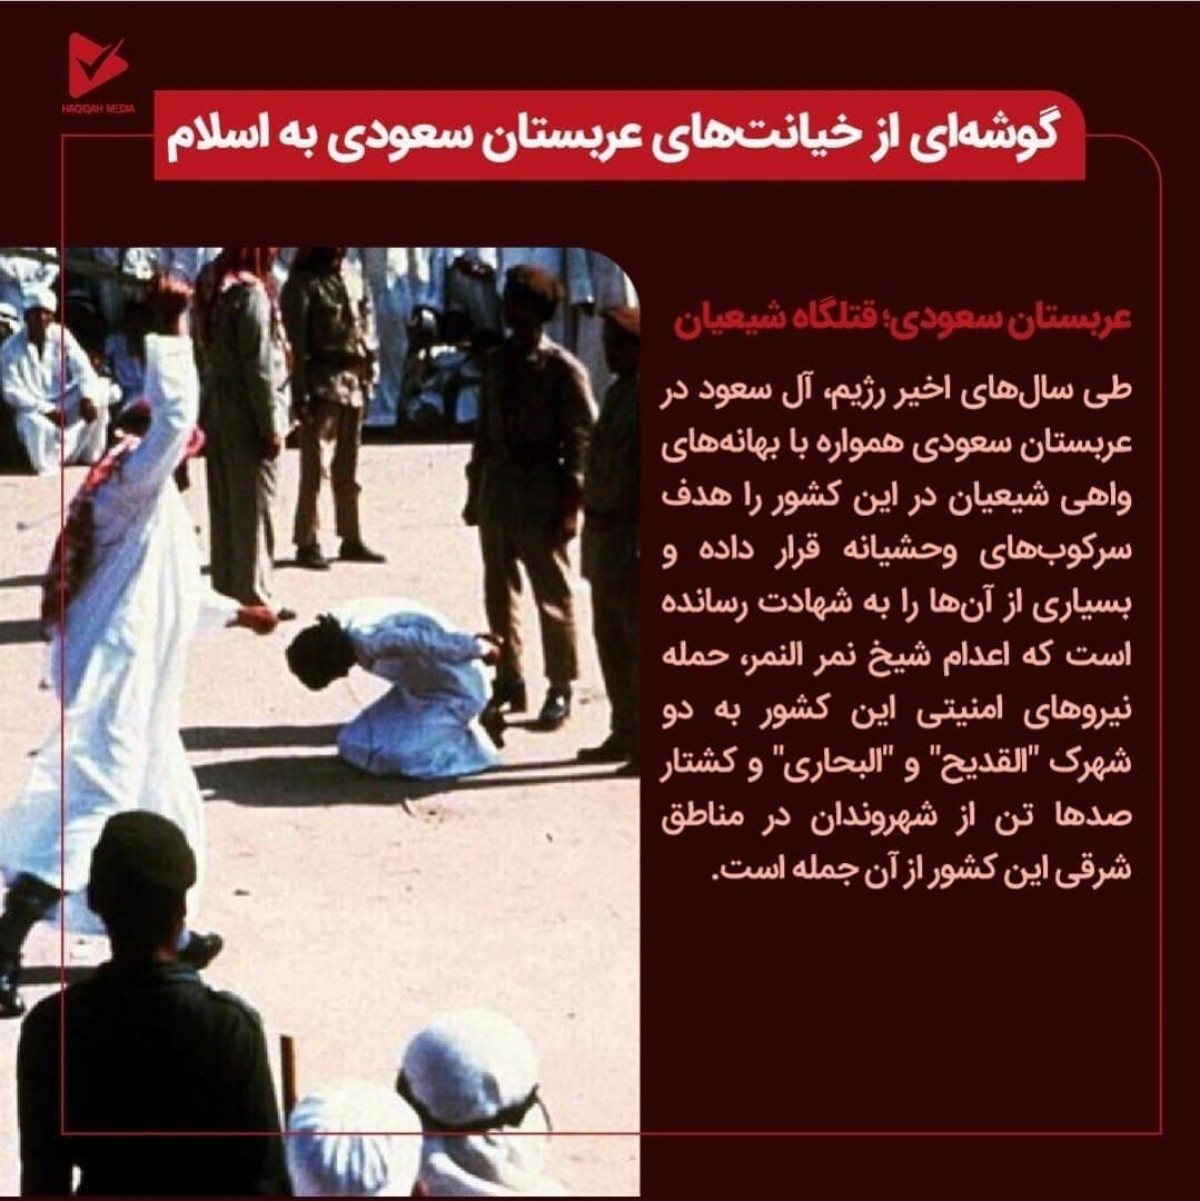 عربستان سعودی؛ قتلگاه شیعیان